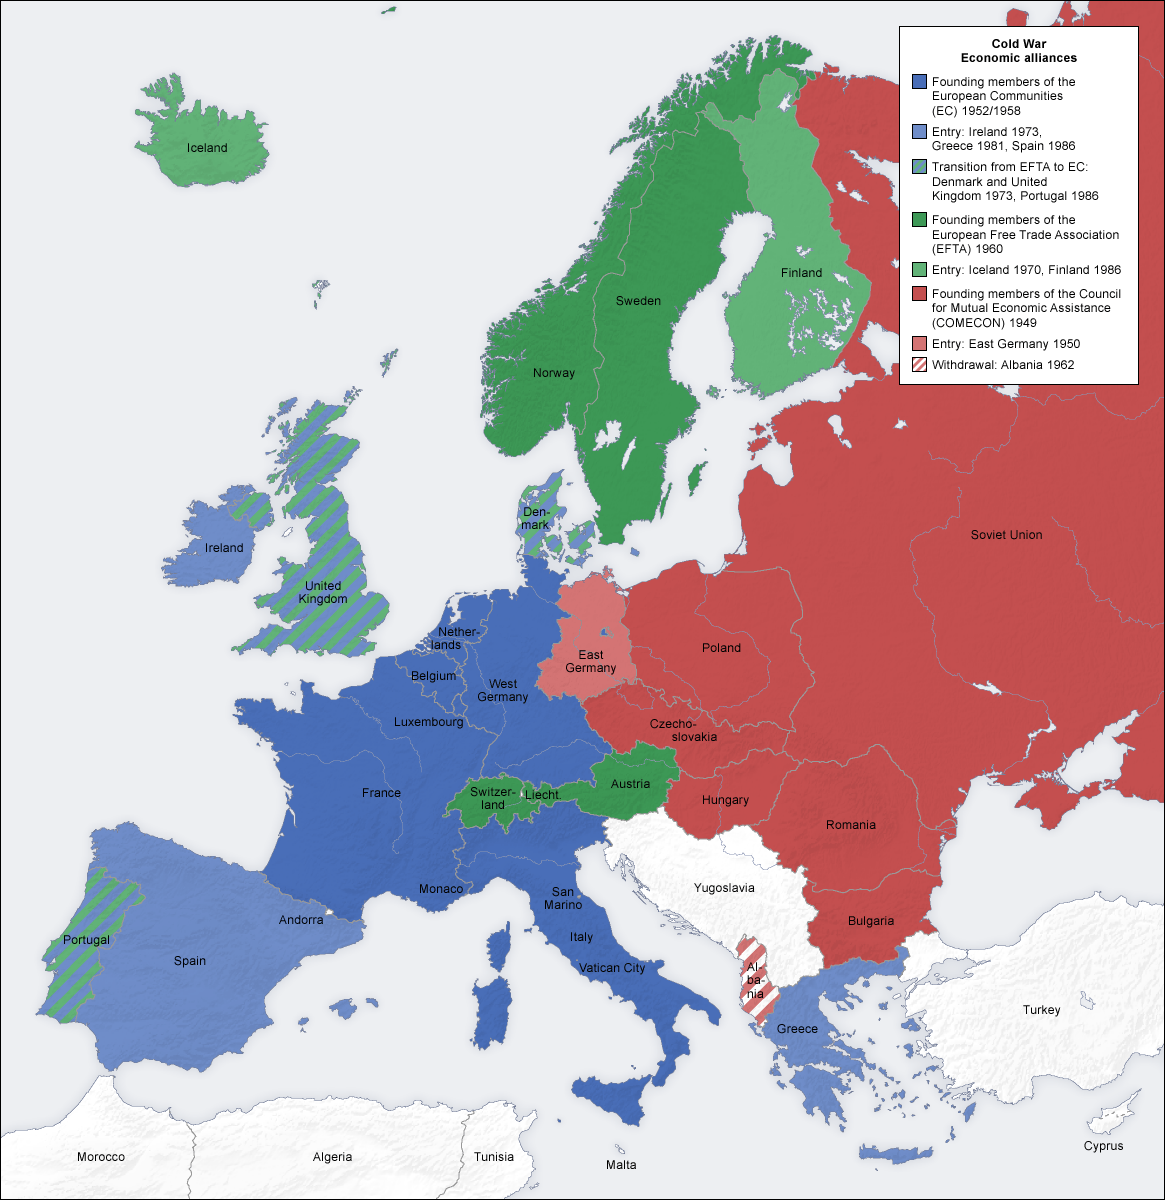 Cold_war_europe_economic_alliances_map_en.png